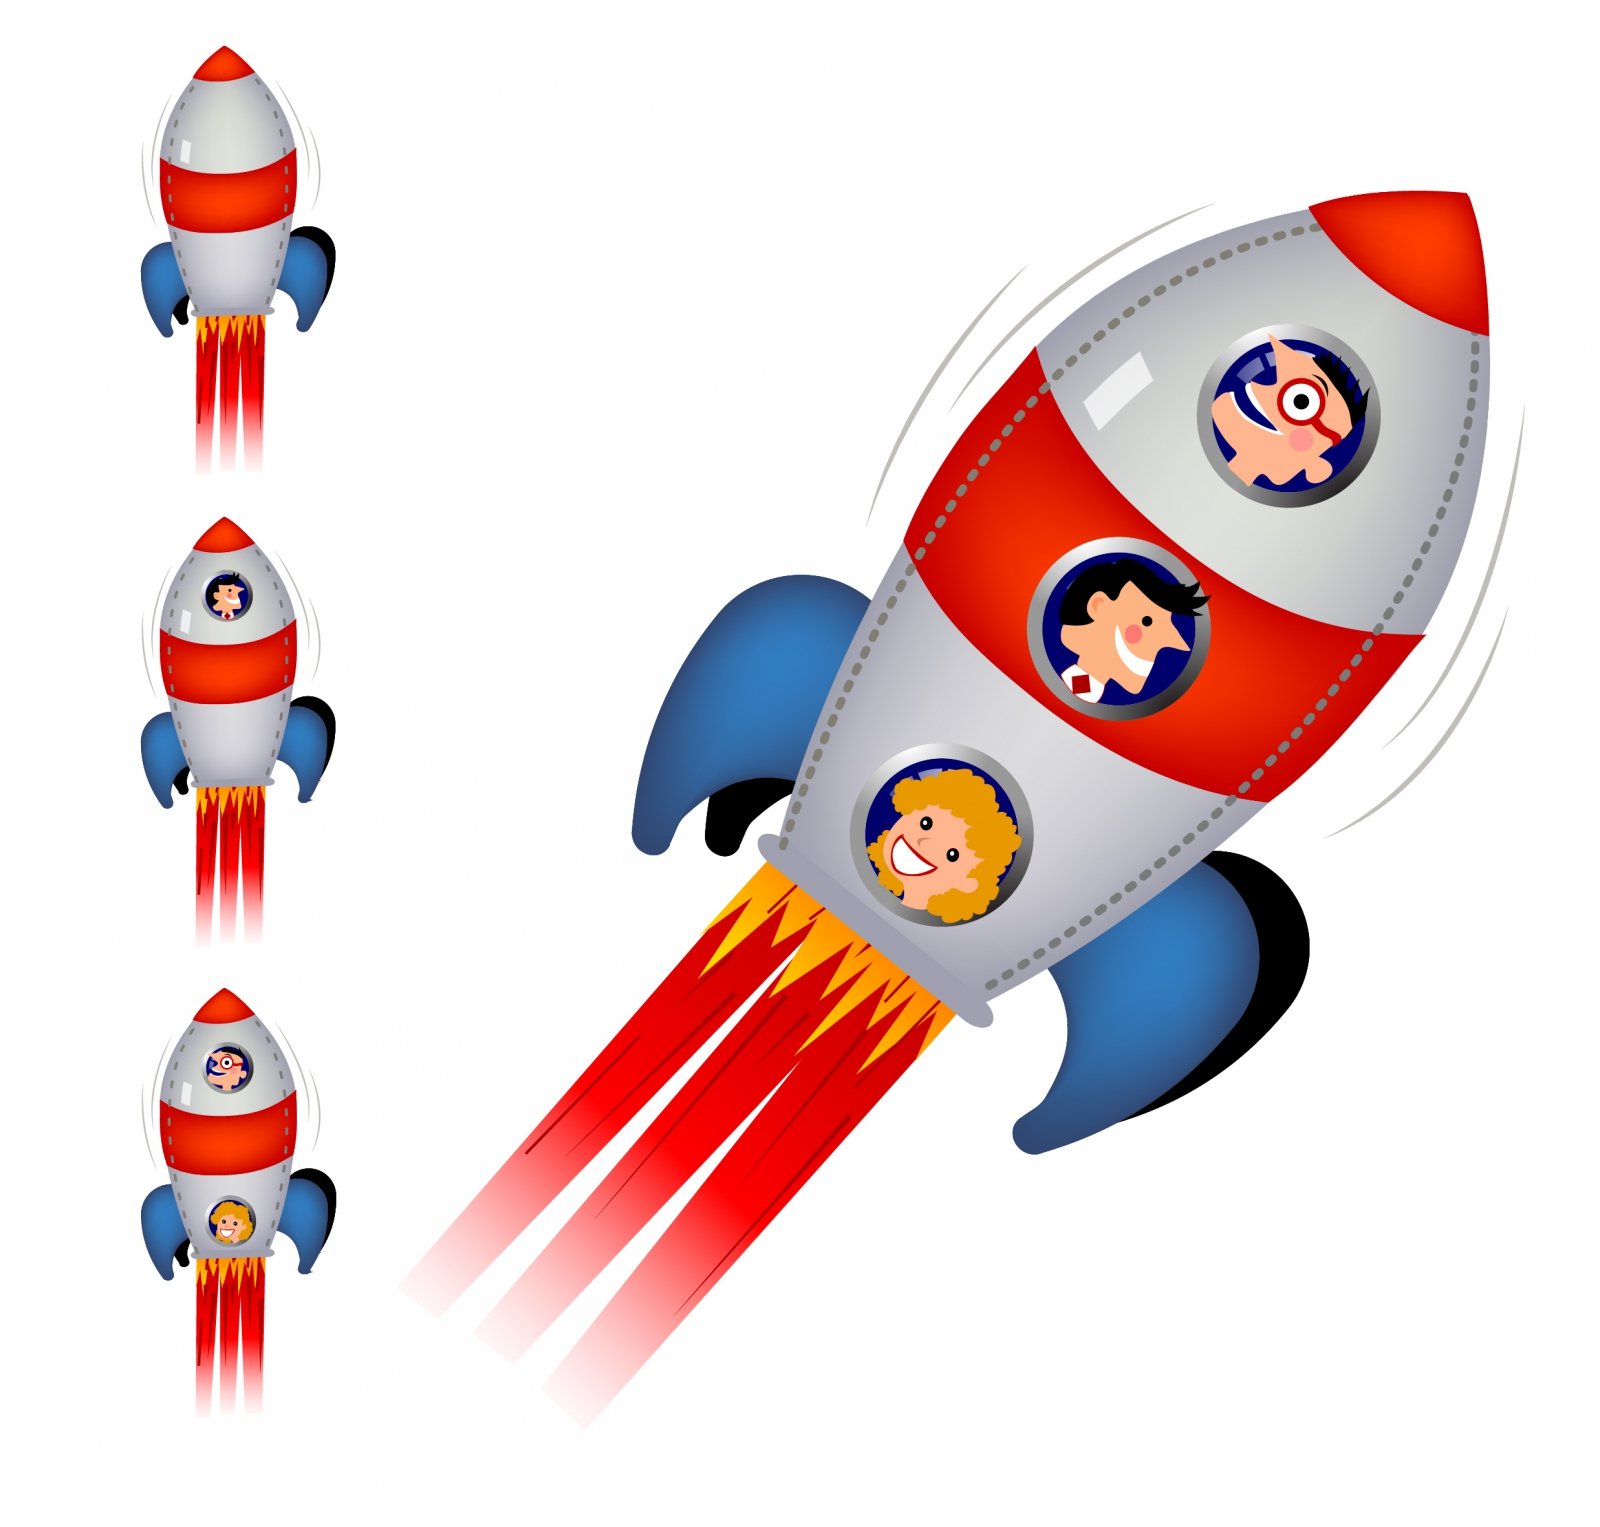 Ракета картинки для детей дошкольного возраста. Ракета для детей. Космическая ракета для детей. Ракета картинка для детей. Изображение ракеты для детей.